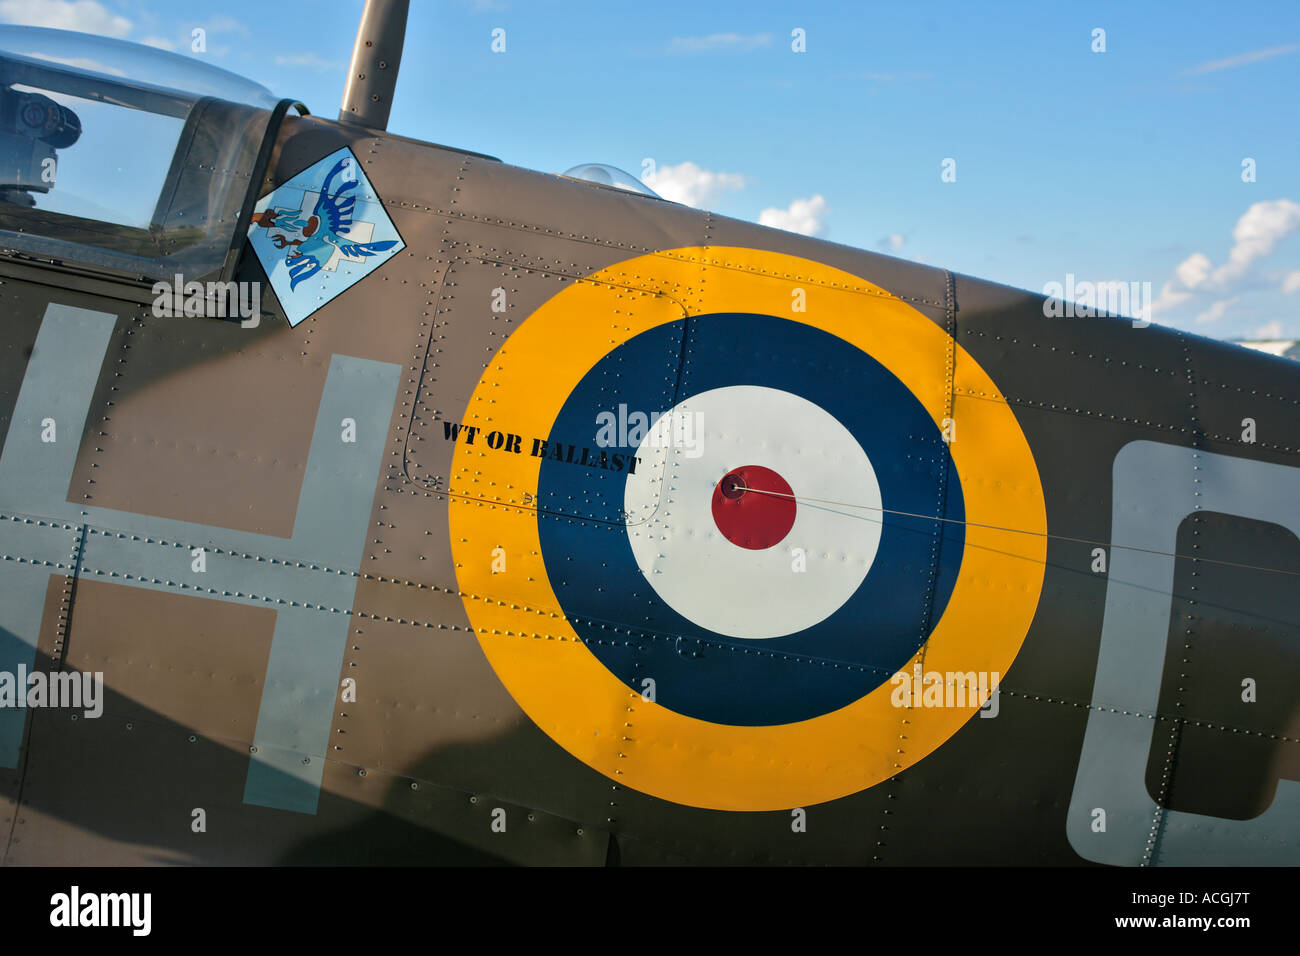 Détail montrant Spitfire Squadron RAF cocarde polonaise logo et wt ou signe de ballast Banque D'Images